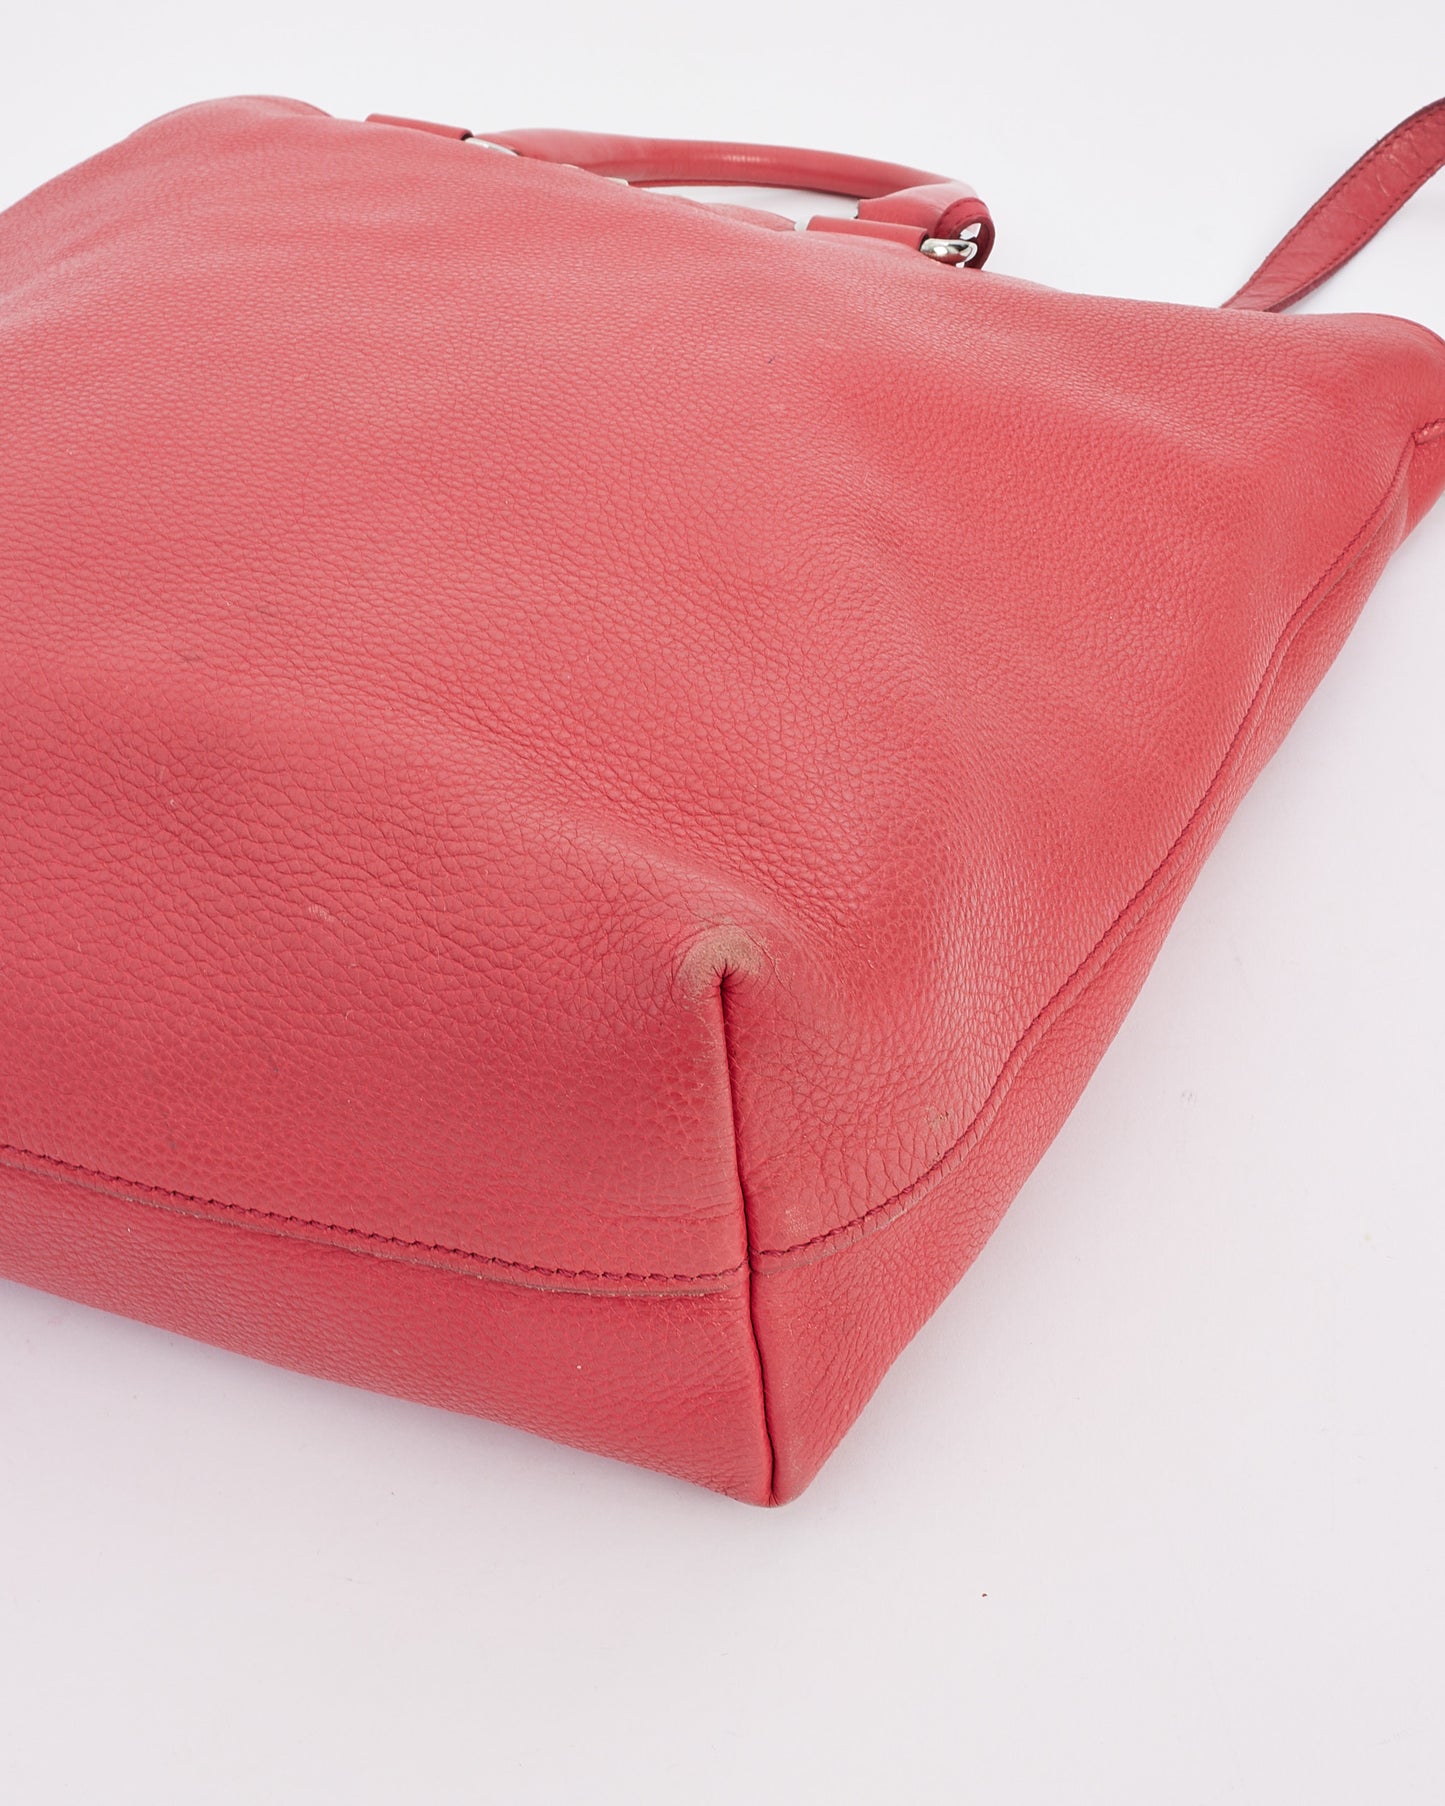 Grand sac cabas convertible Daino en cuir rouge rose Prada